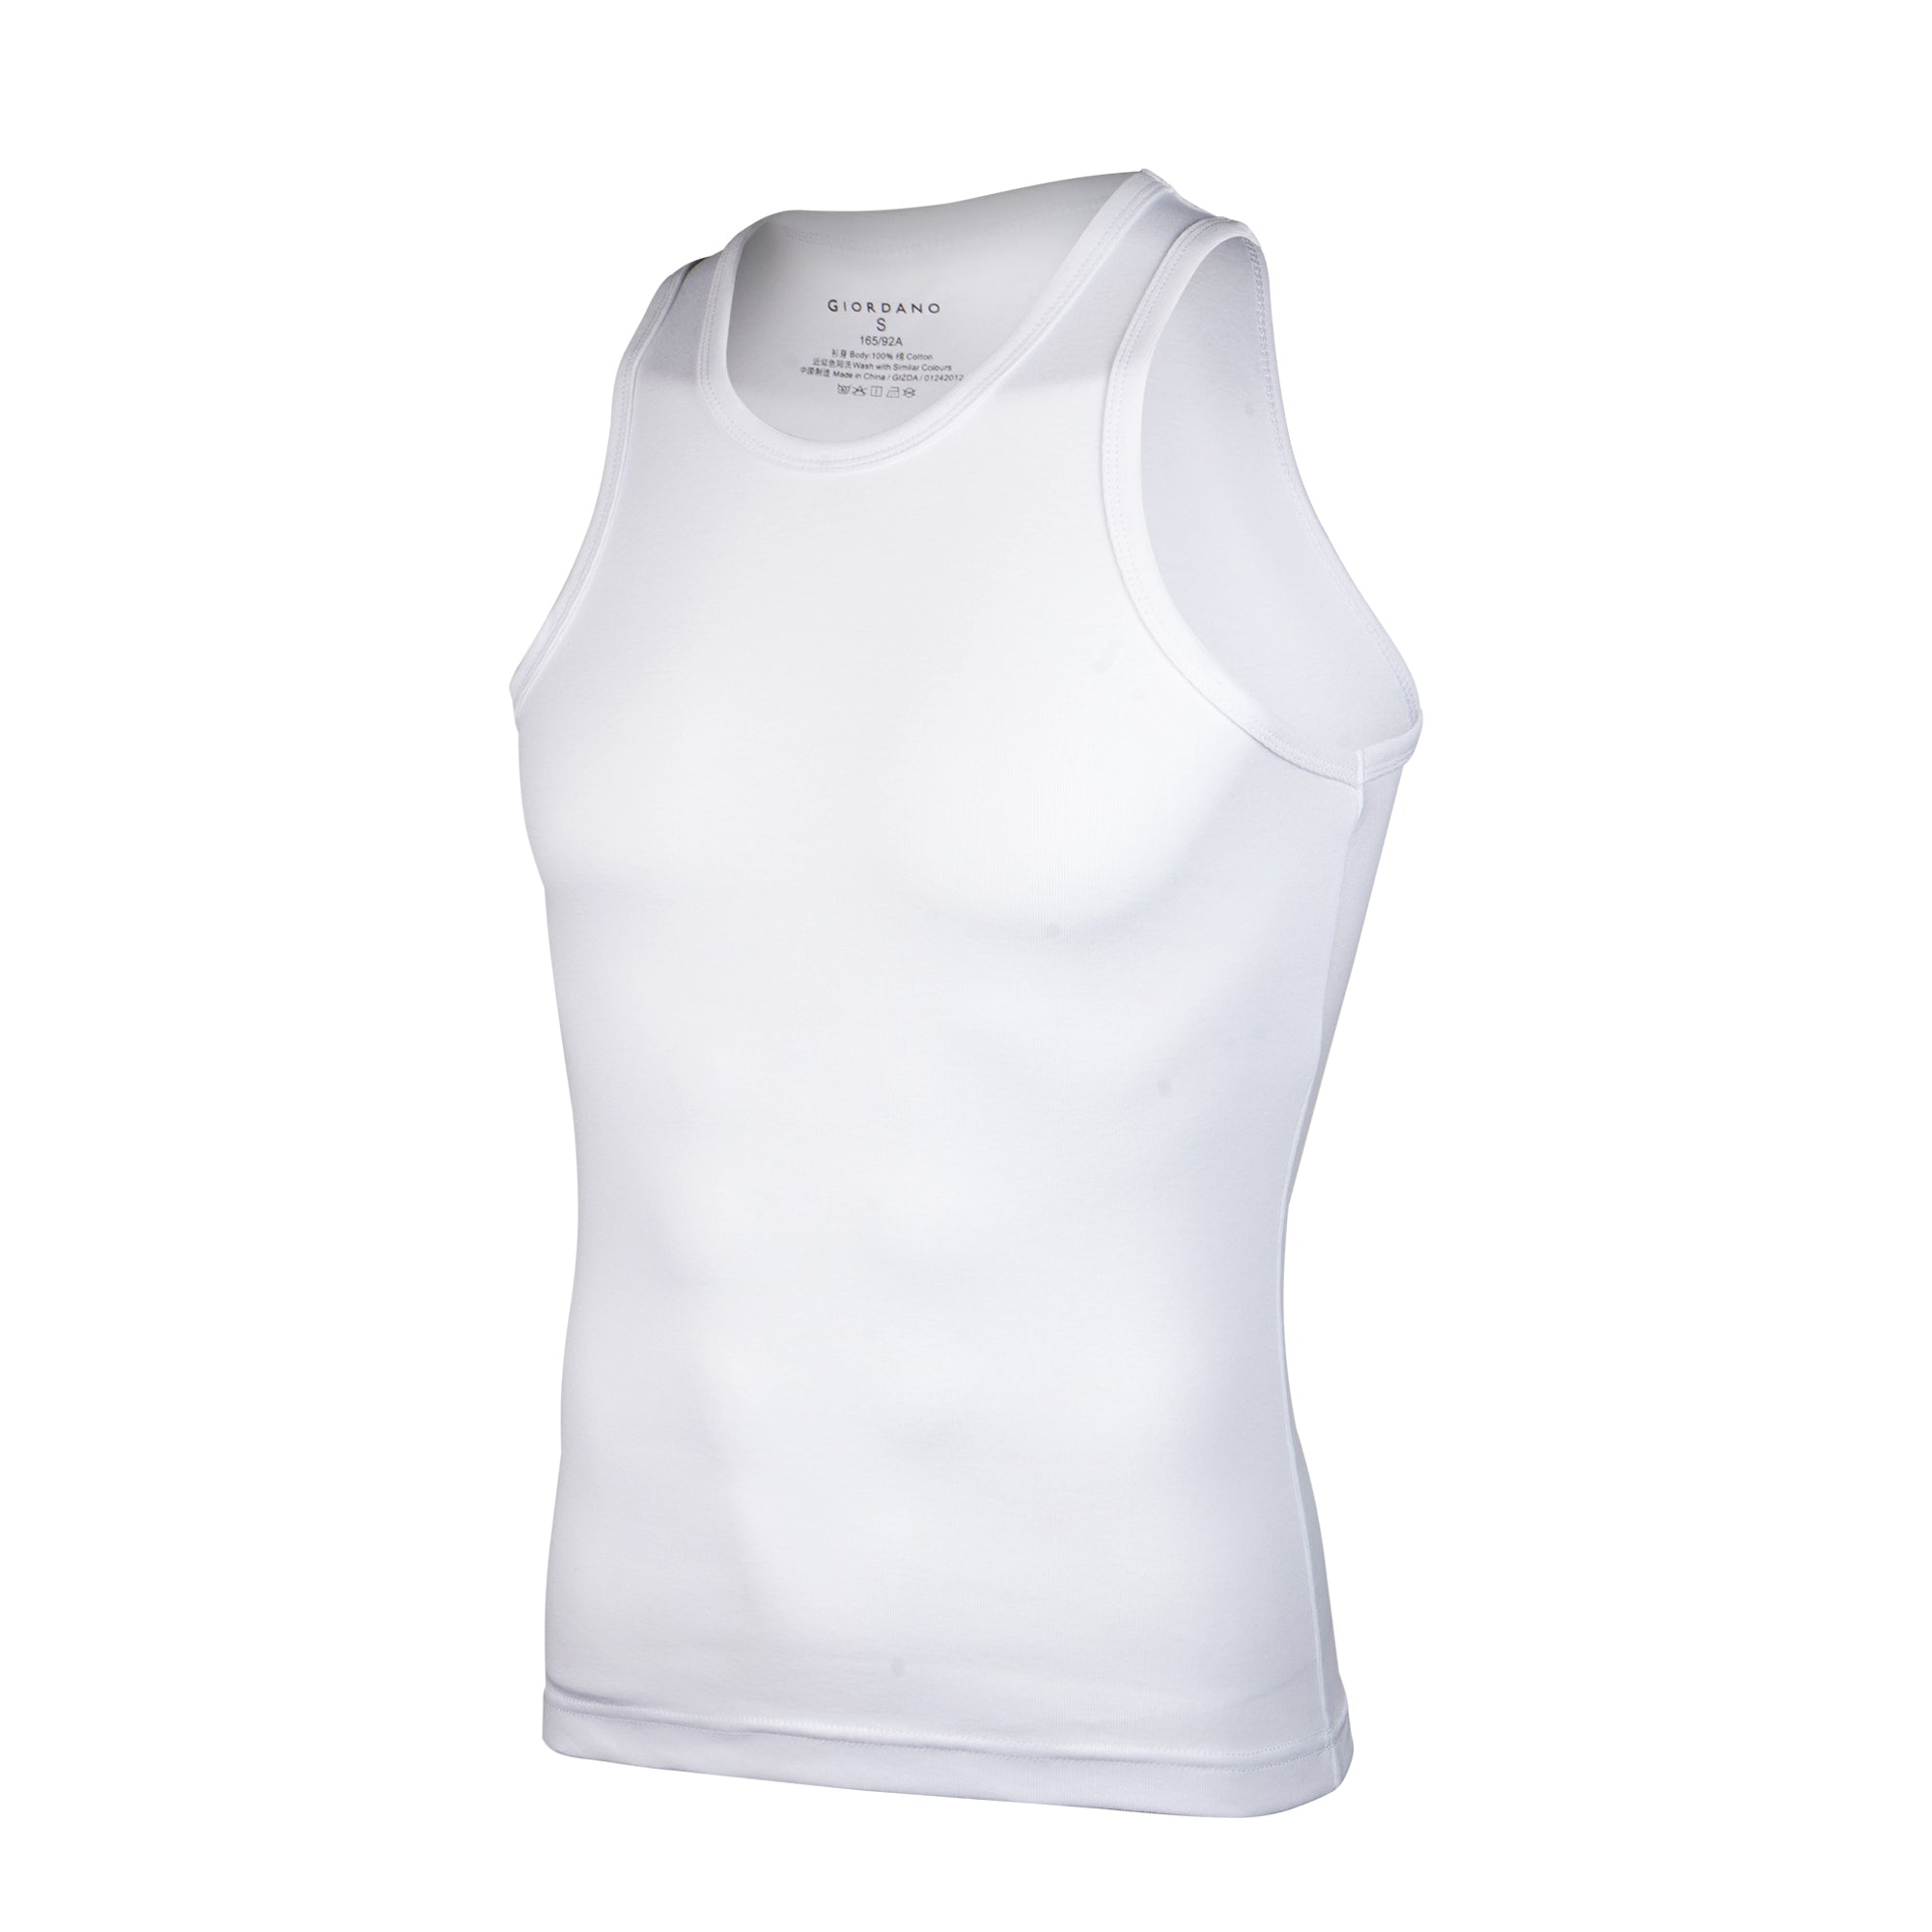 Men's Solid U-neck Basic Slim Vests (1pcs in 1pack)